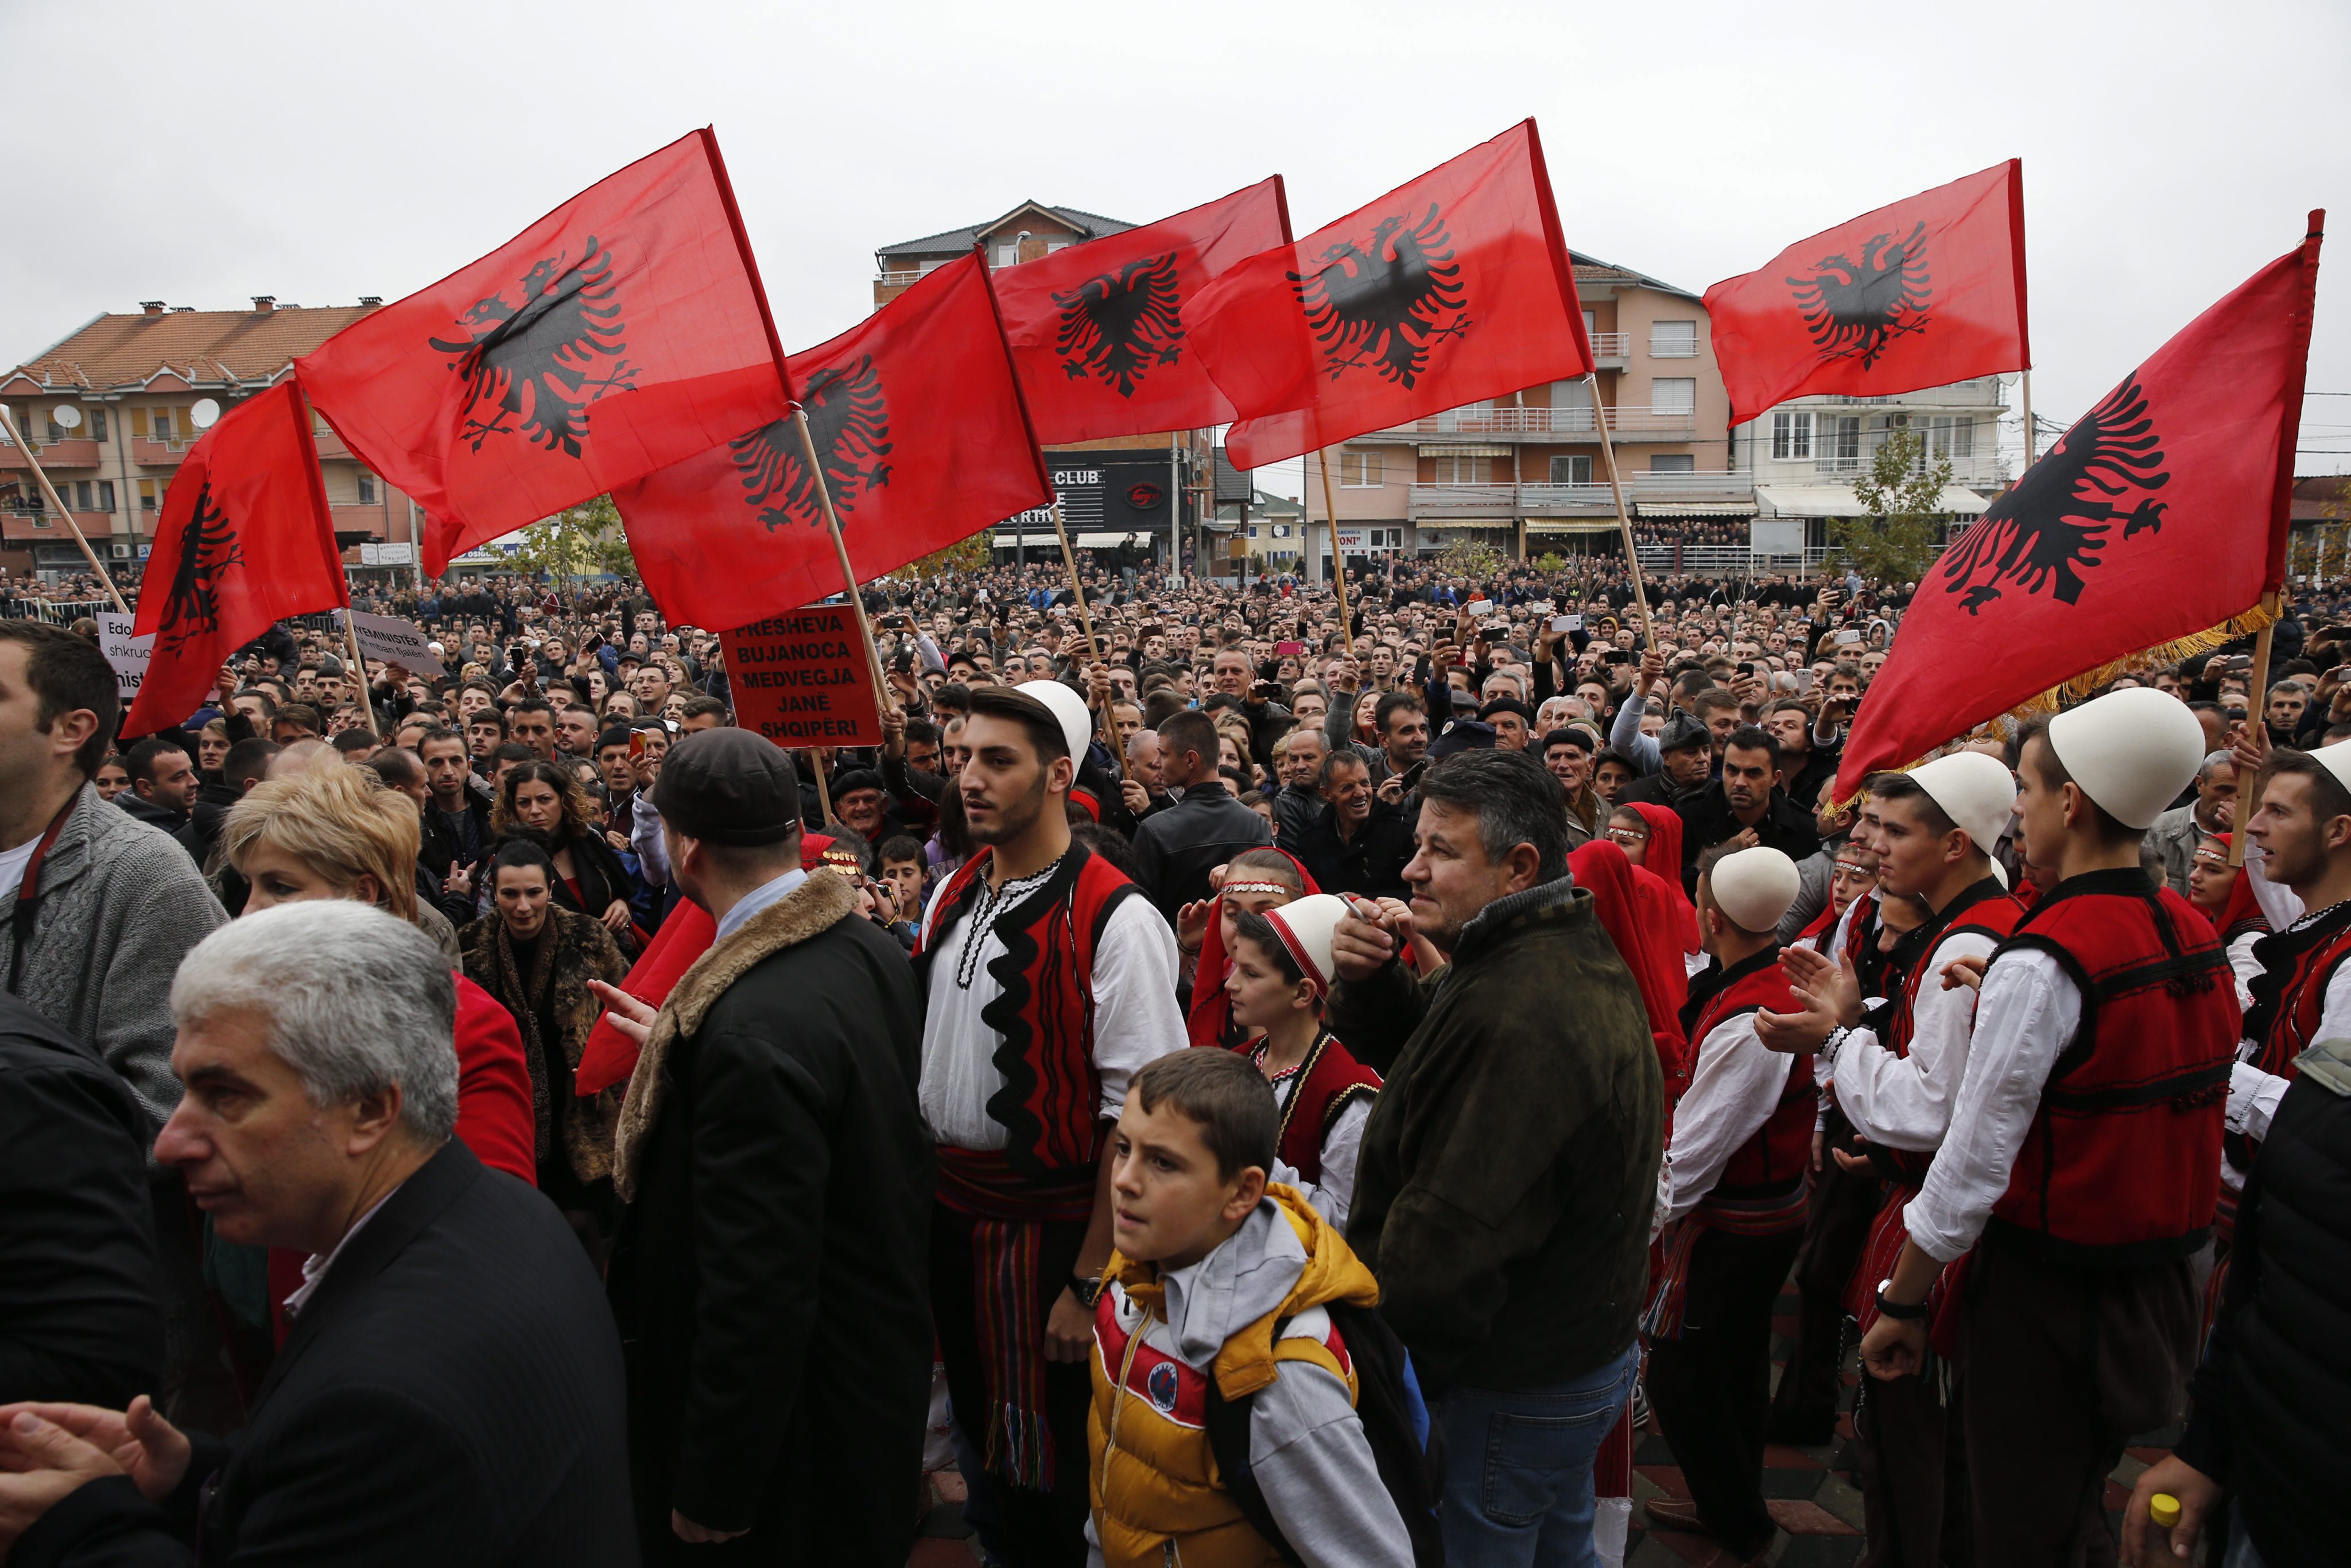 ΥΠΕΞ: Ενόχληση για δηλώσεις Αλβανών περί Τσαμουριάς